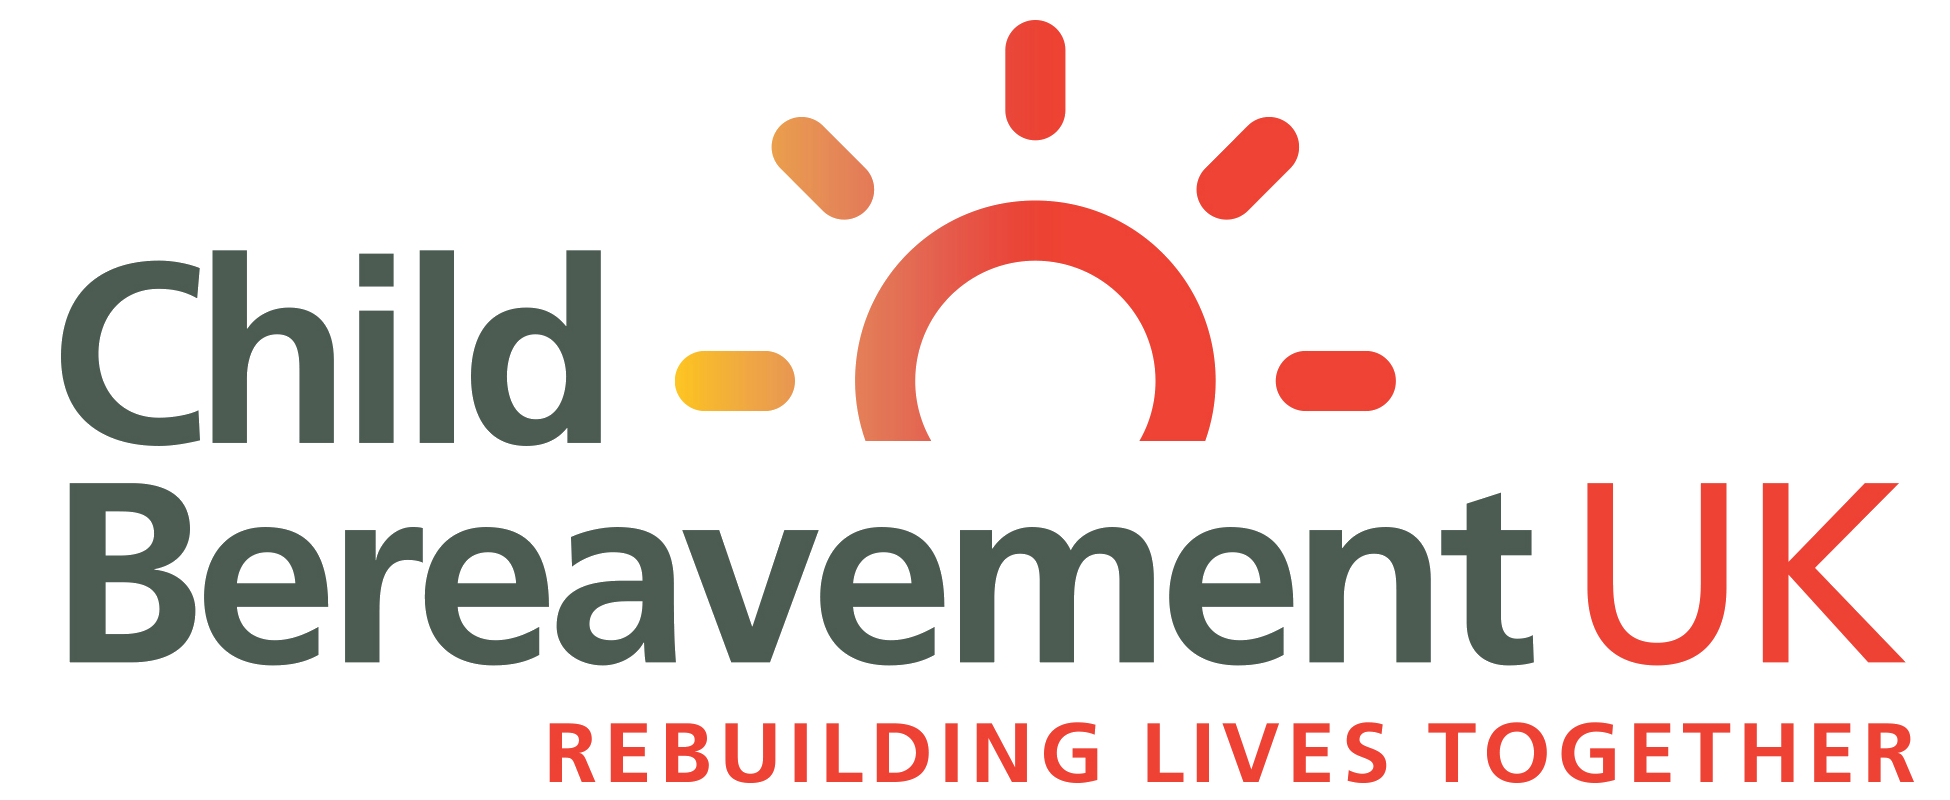 Child Bereavement UK logo